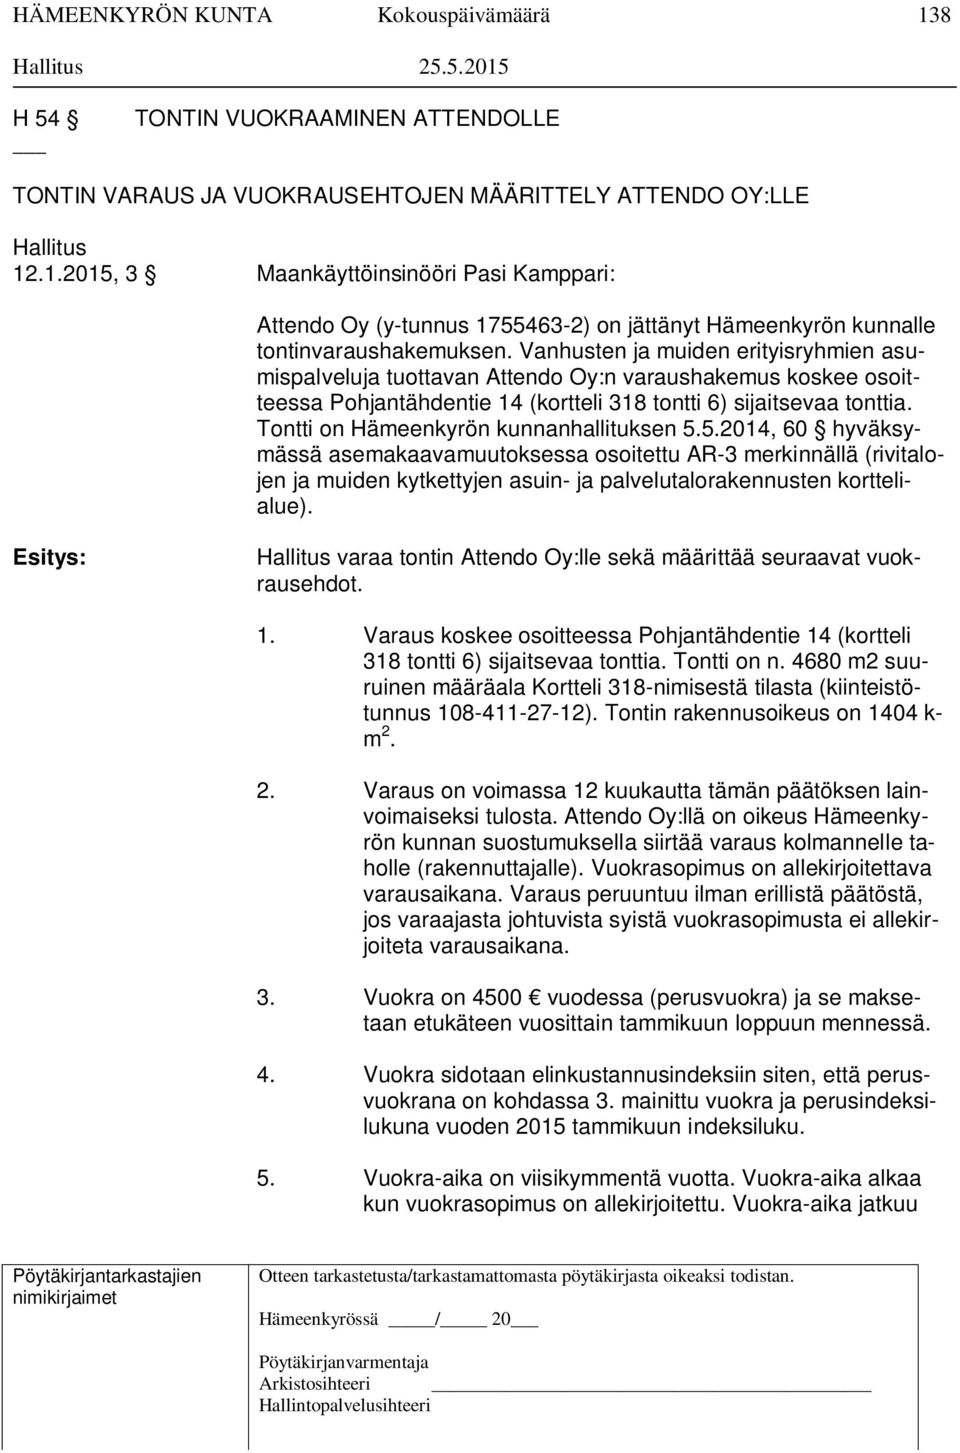 Tontti on Hämeenkyrön kunnanhallituksen 5.5.2014, 60 hyväksymässä asemakaavamuutoksessa osoitettu AR-3 merkinnällä (rivitalojen ja muiden kytkettyjen asuin- ja palvelutalorakennusten korttelialue).